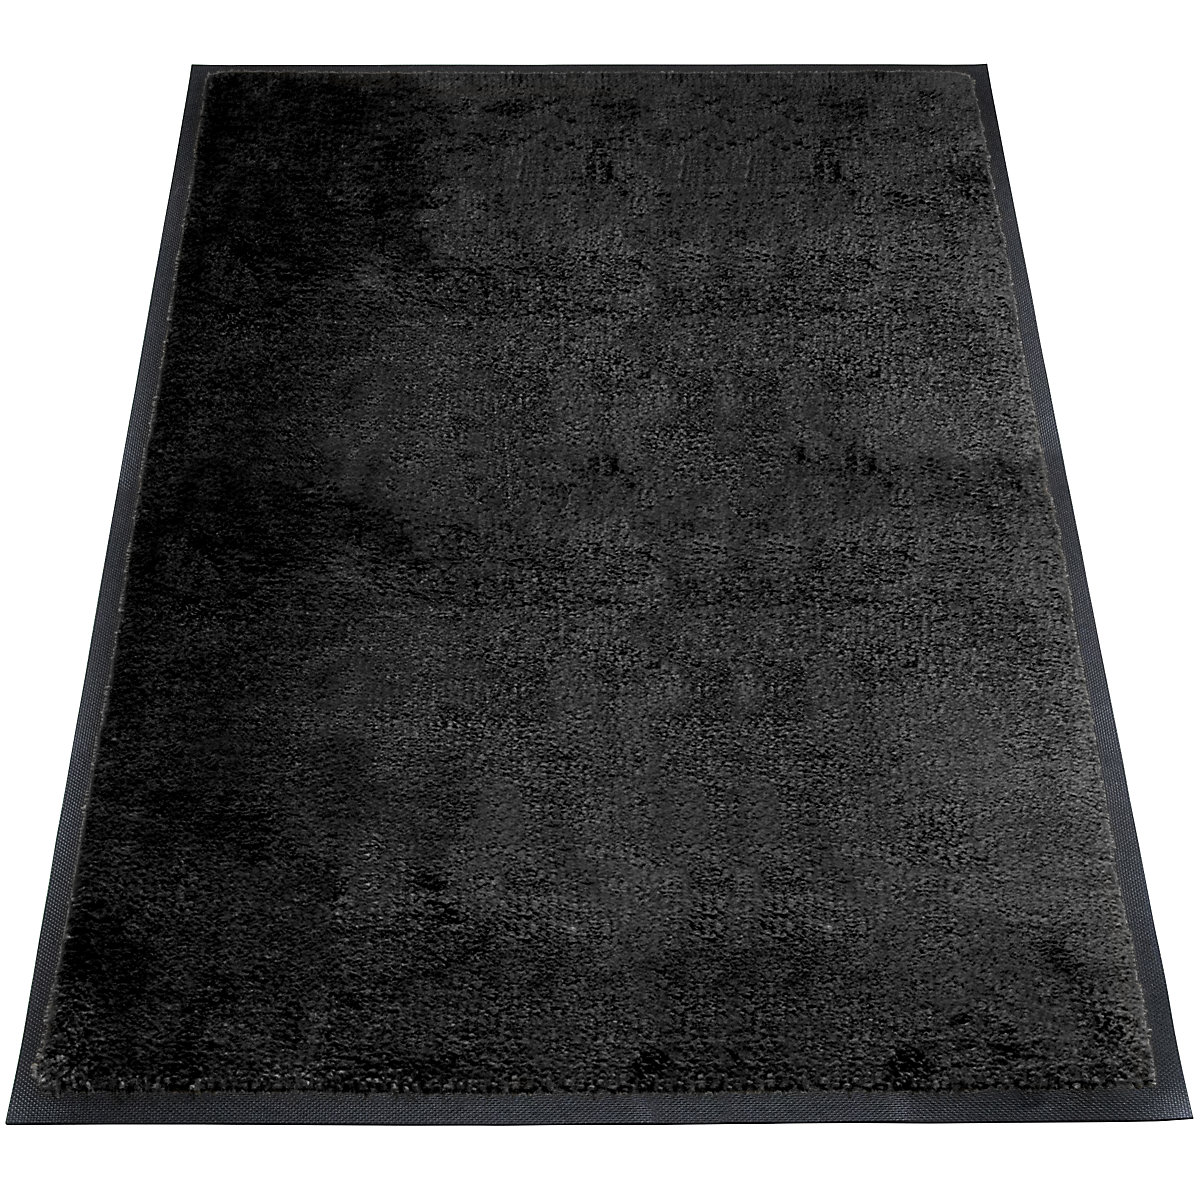 Tapis de propreté EAZYCARE STYLE, L x l 1200 x 800 mm, noir profond